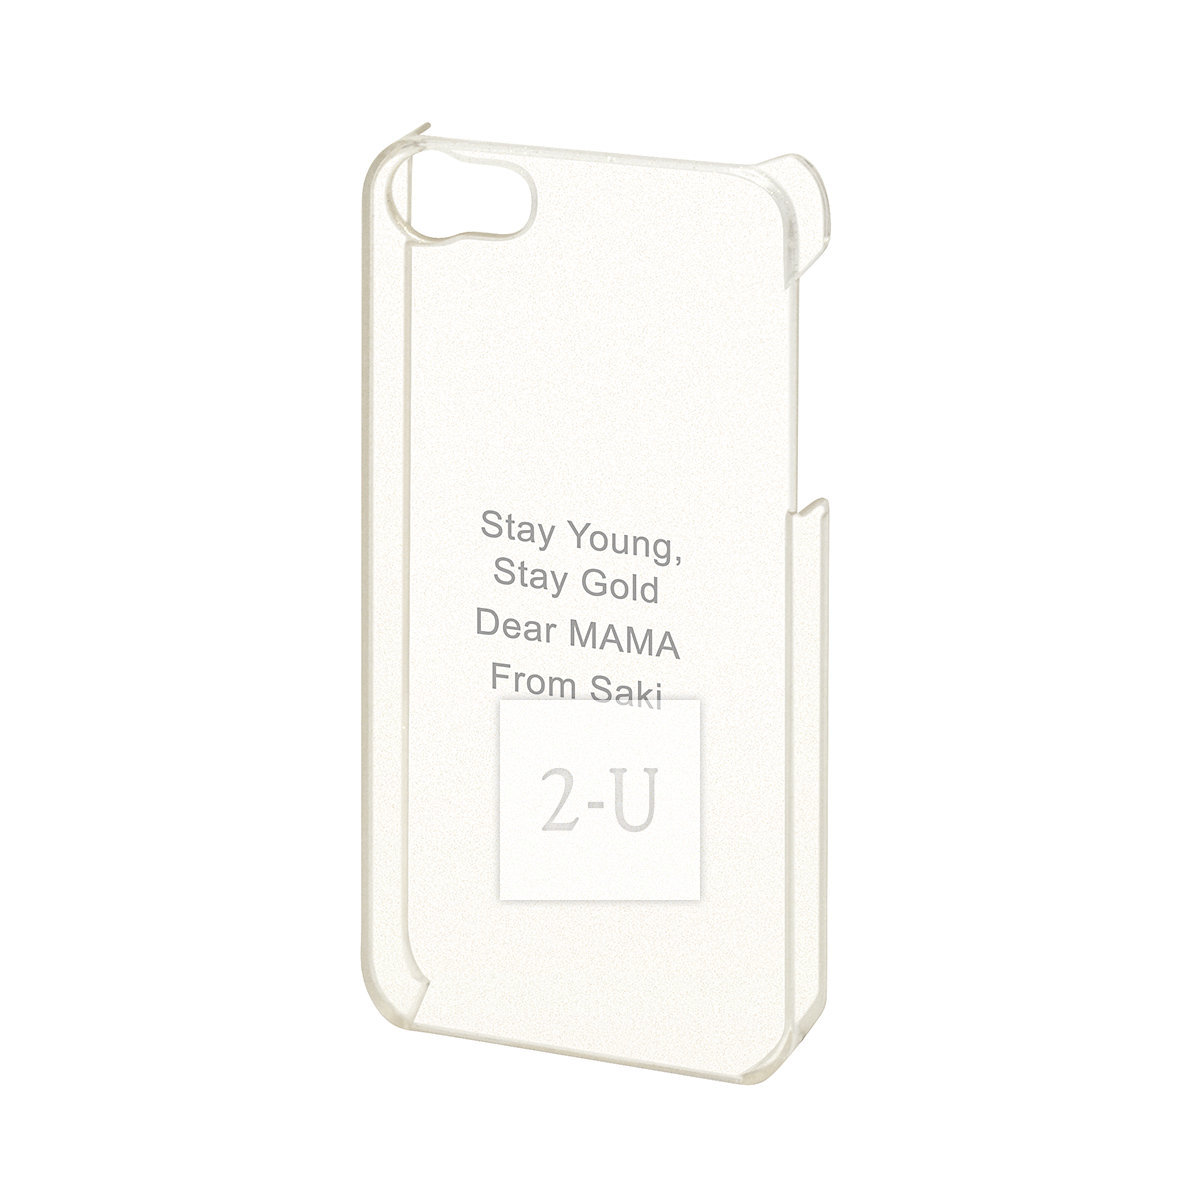 苹果 Apple iPhone 5/5s/SE 外壳手机保护壳 闪闪银粉透明色